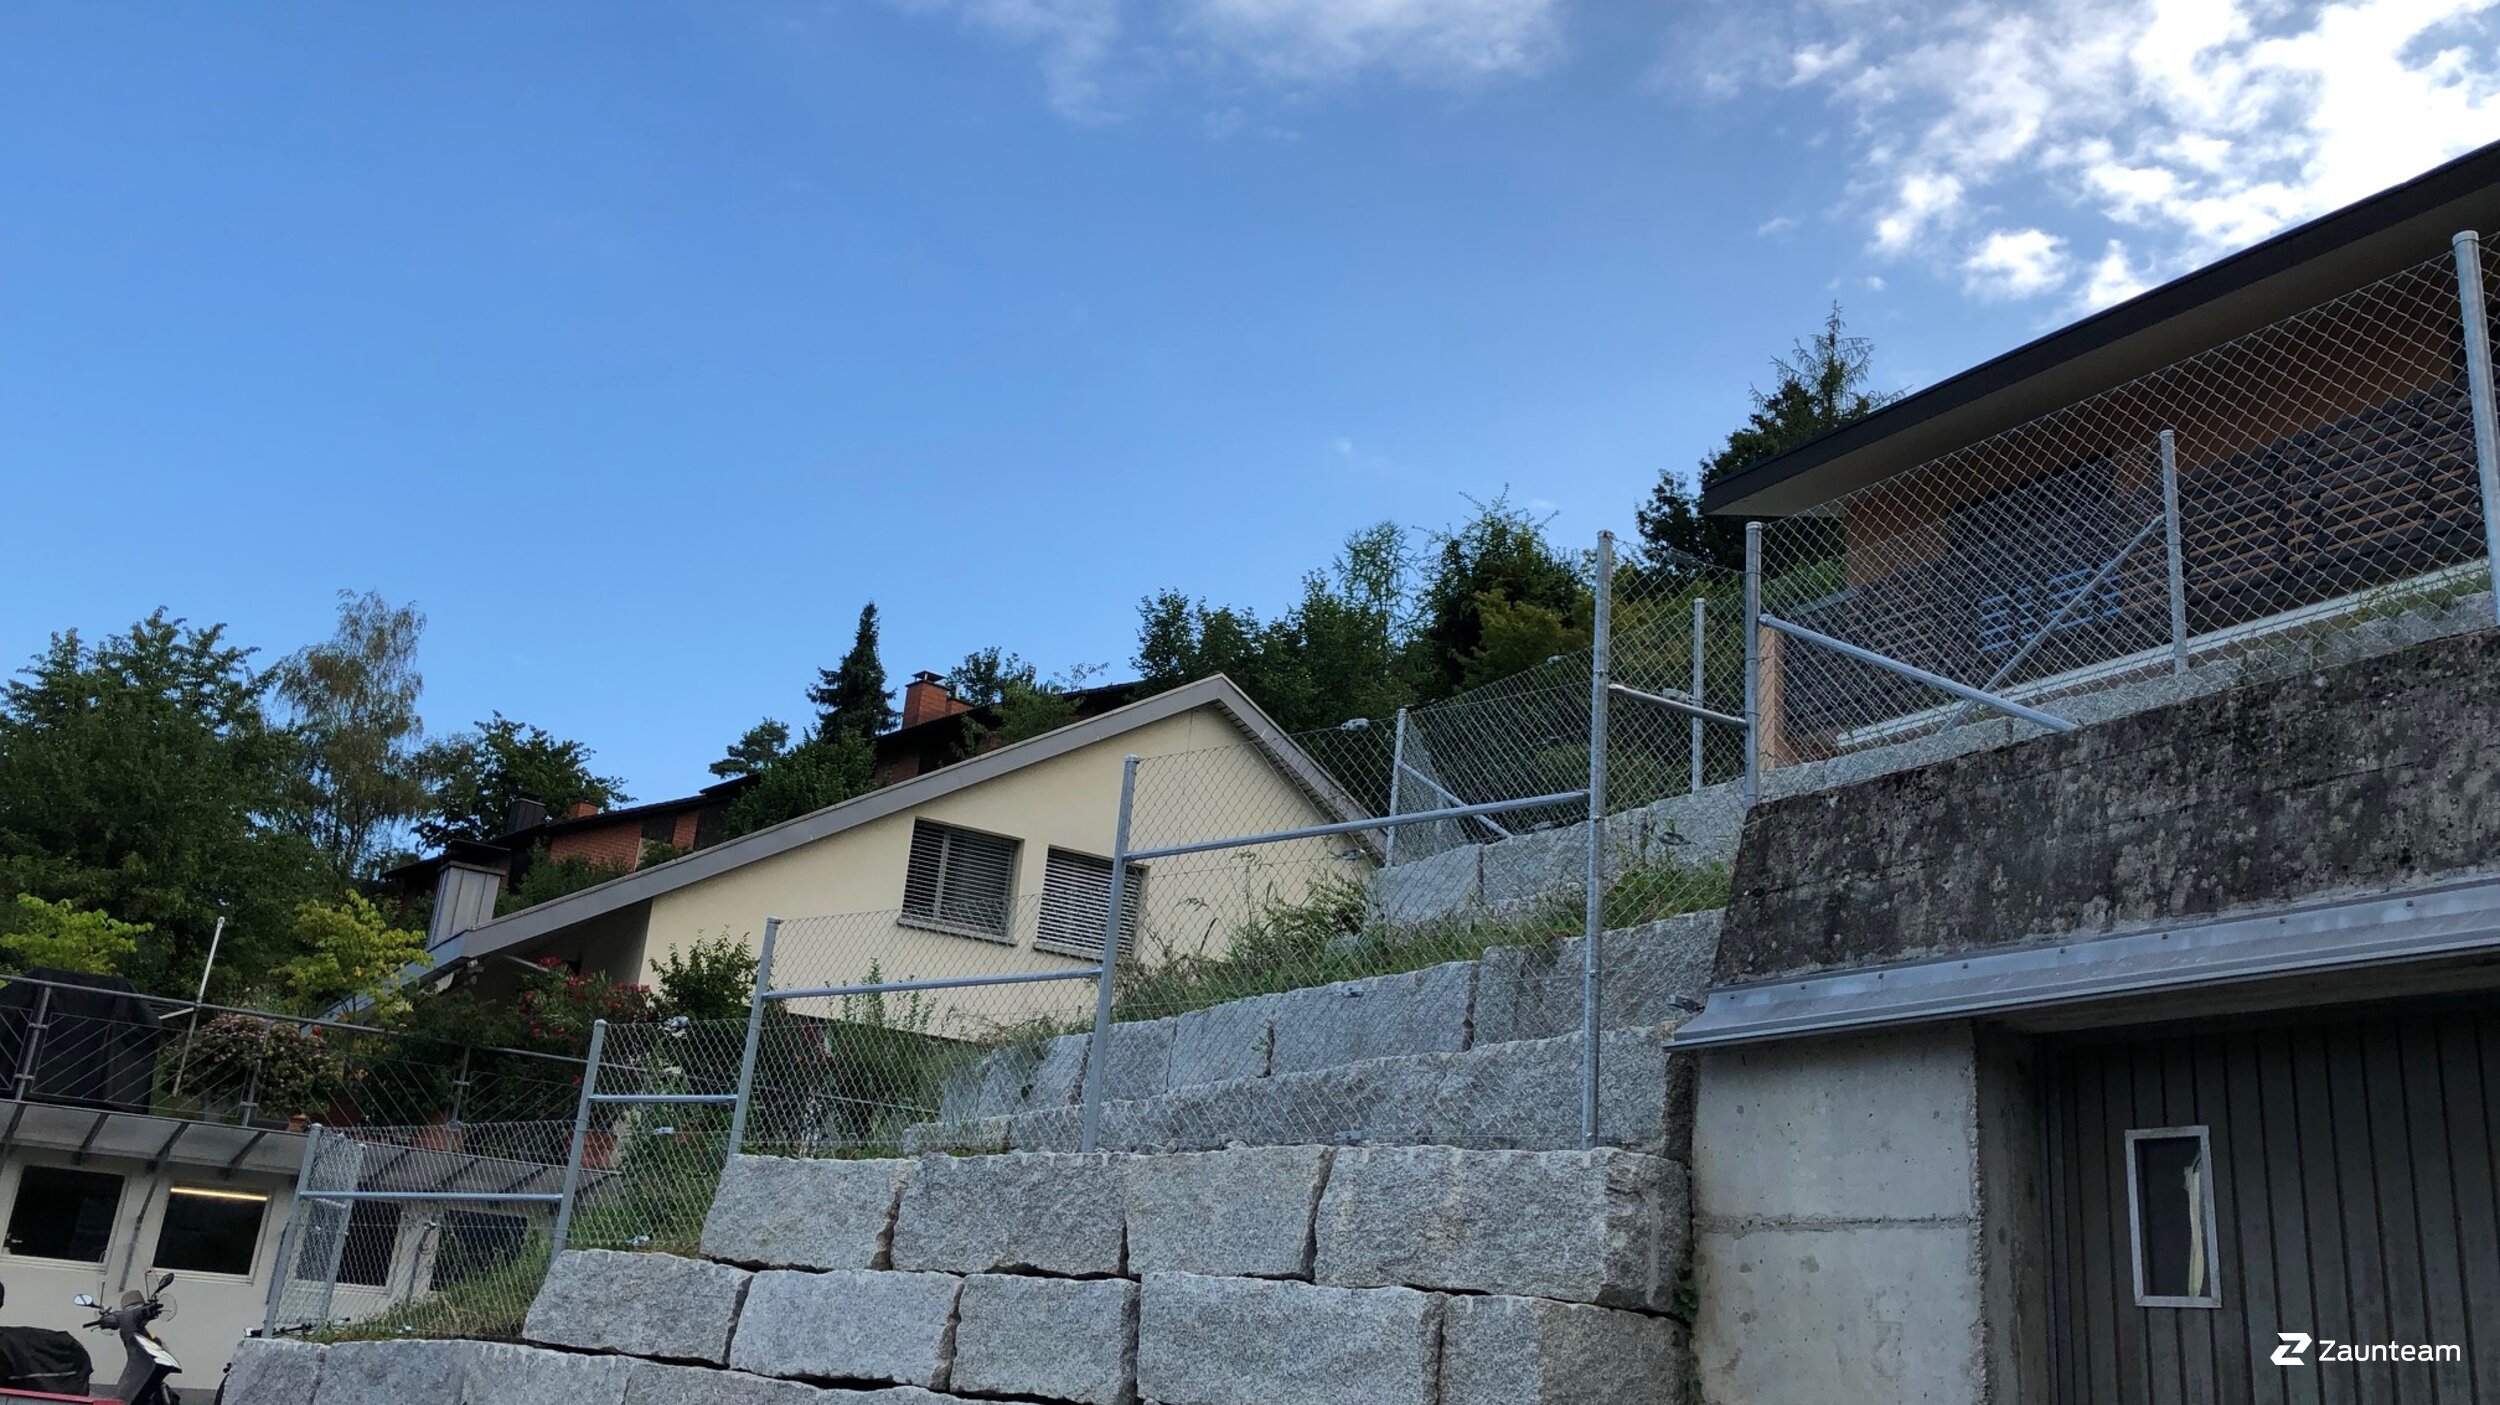 Grillage diagonal de 2019 à 8422 Pfungen Suisse de Zaunteam Neftenbach.